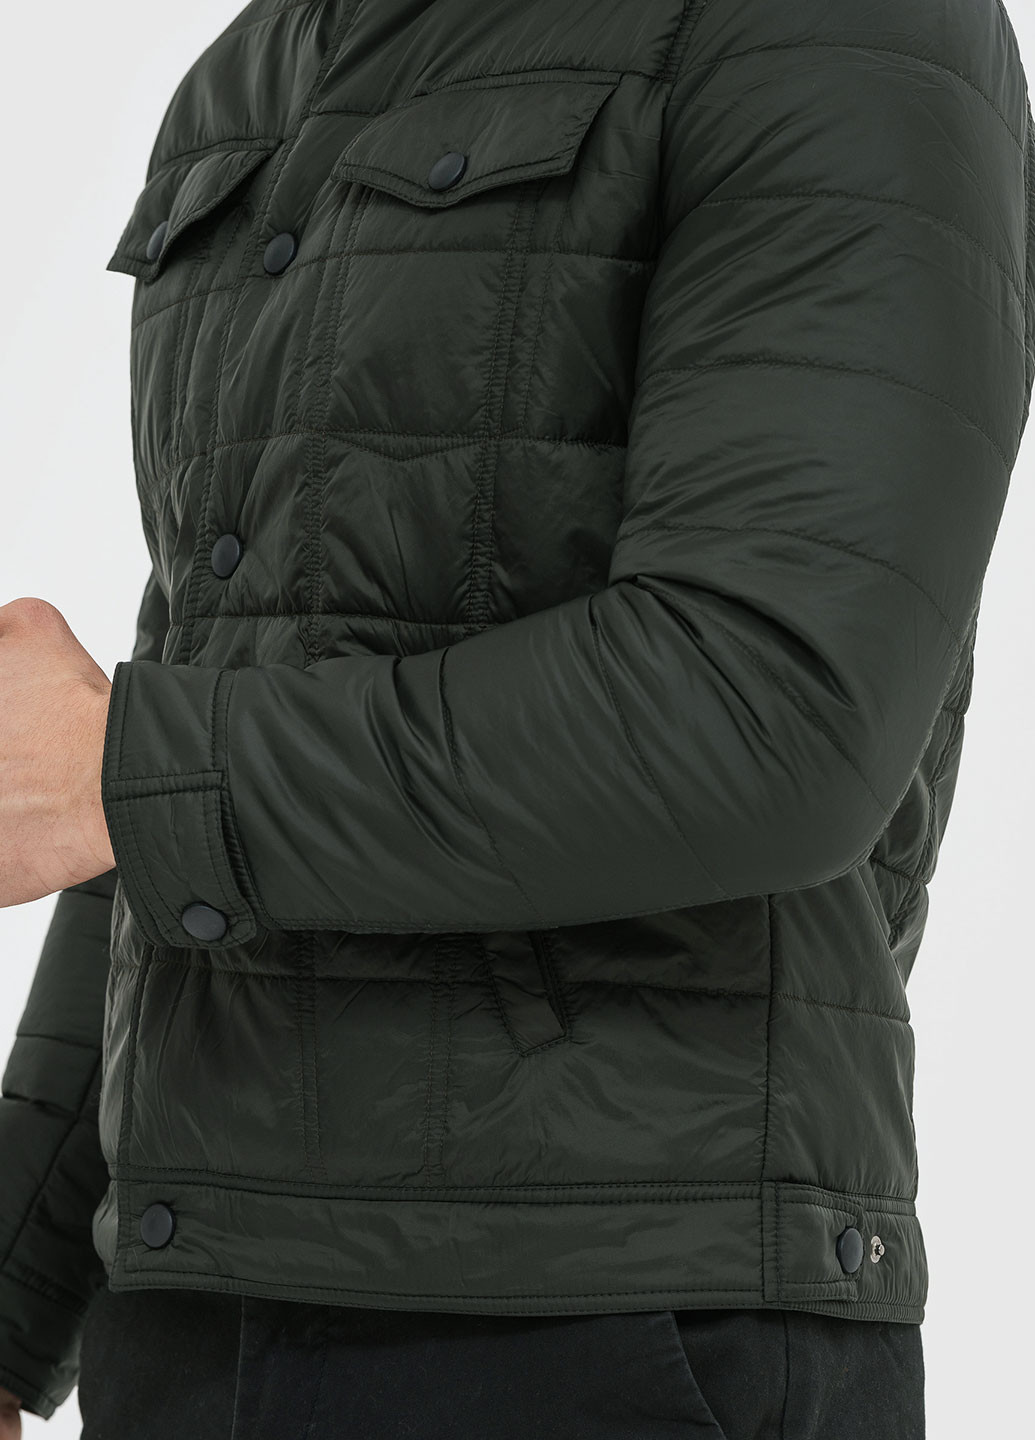 Оливковая (хаки) демисезонная куртка легкая Astoni SONAR